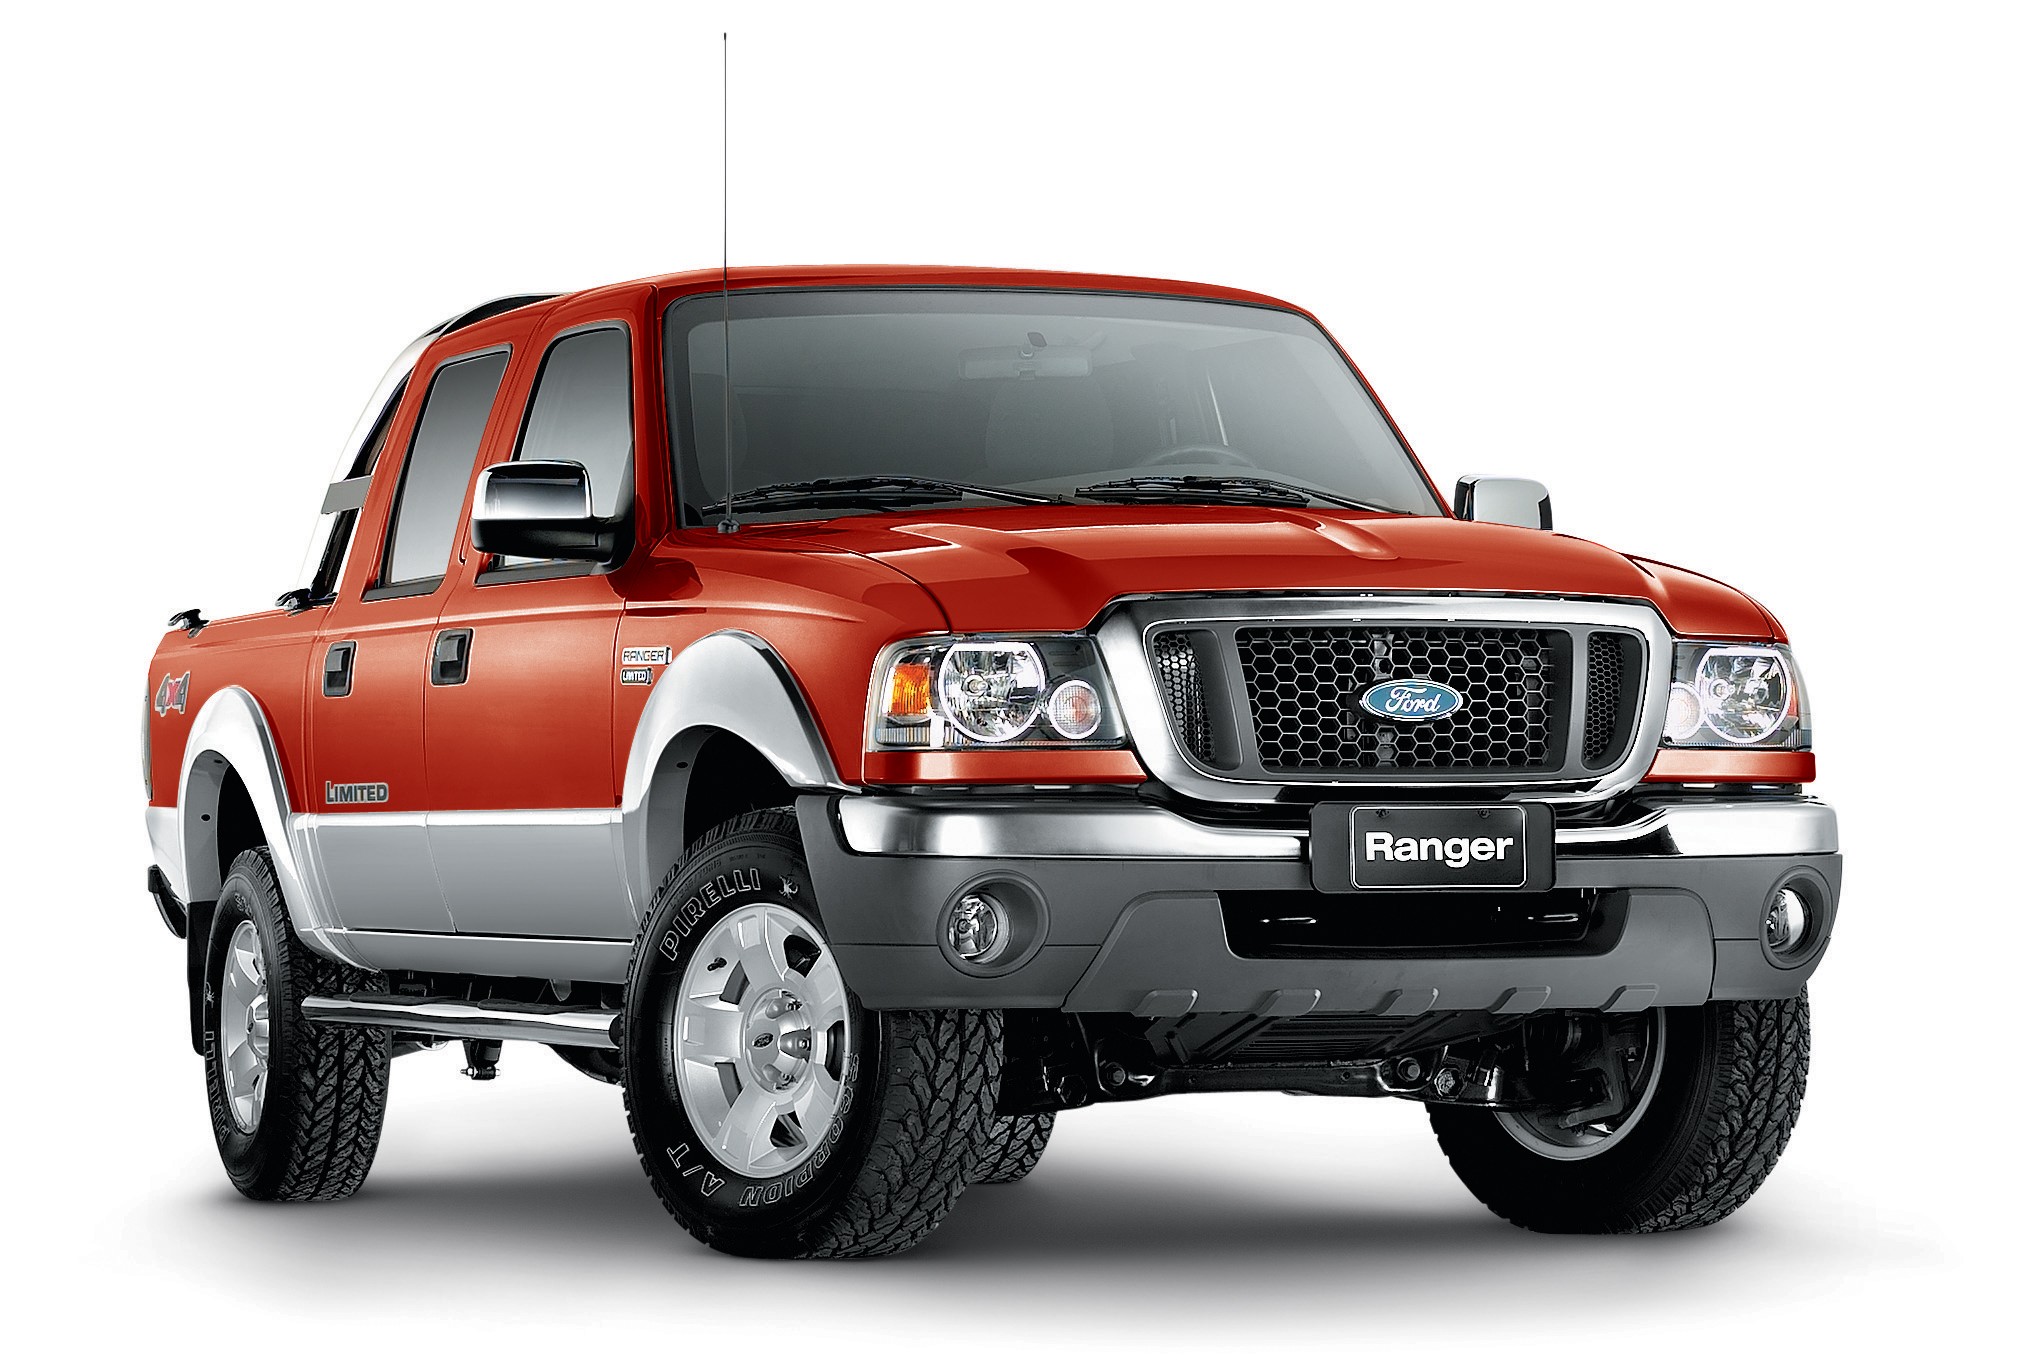 RECALL: Comunicado aos proprietários dos veículos Ford Ranger, modelos 2005 a 2012, equipados com Airbag frontal do passageiro